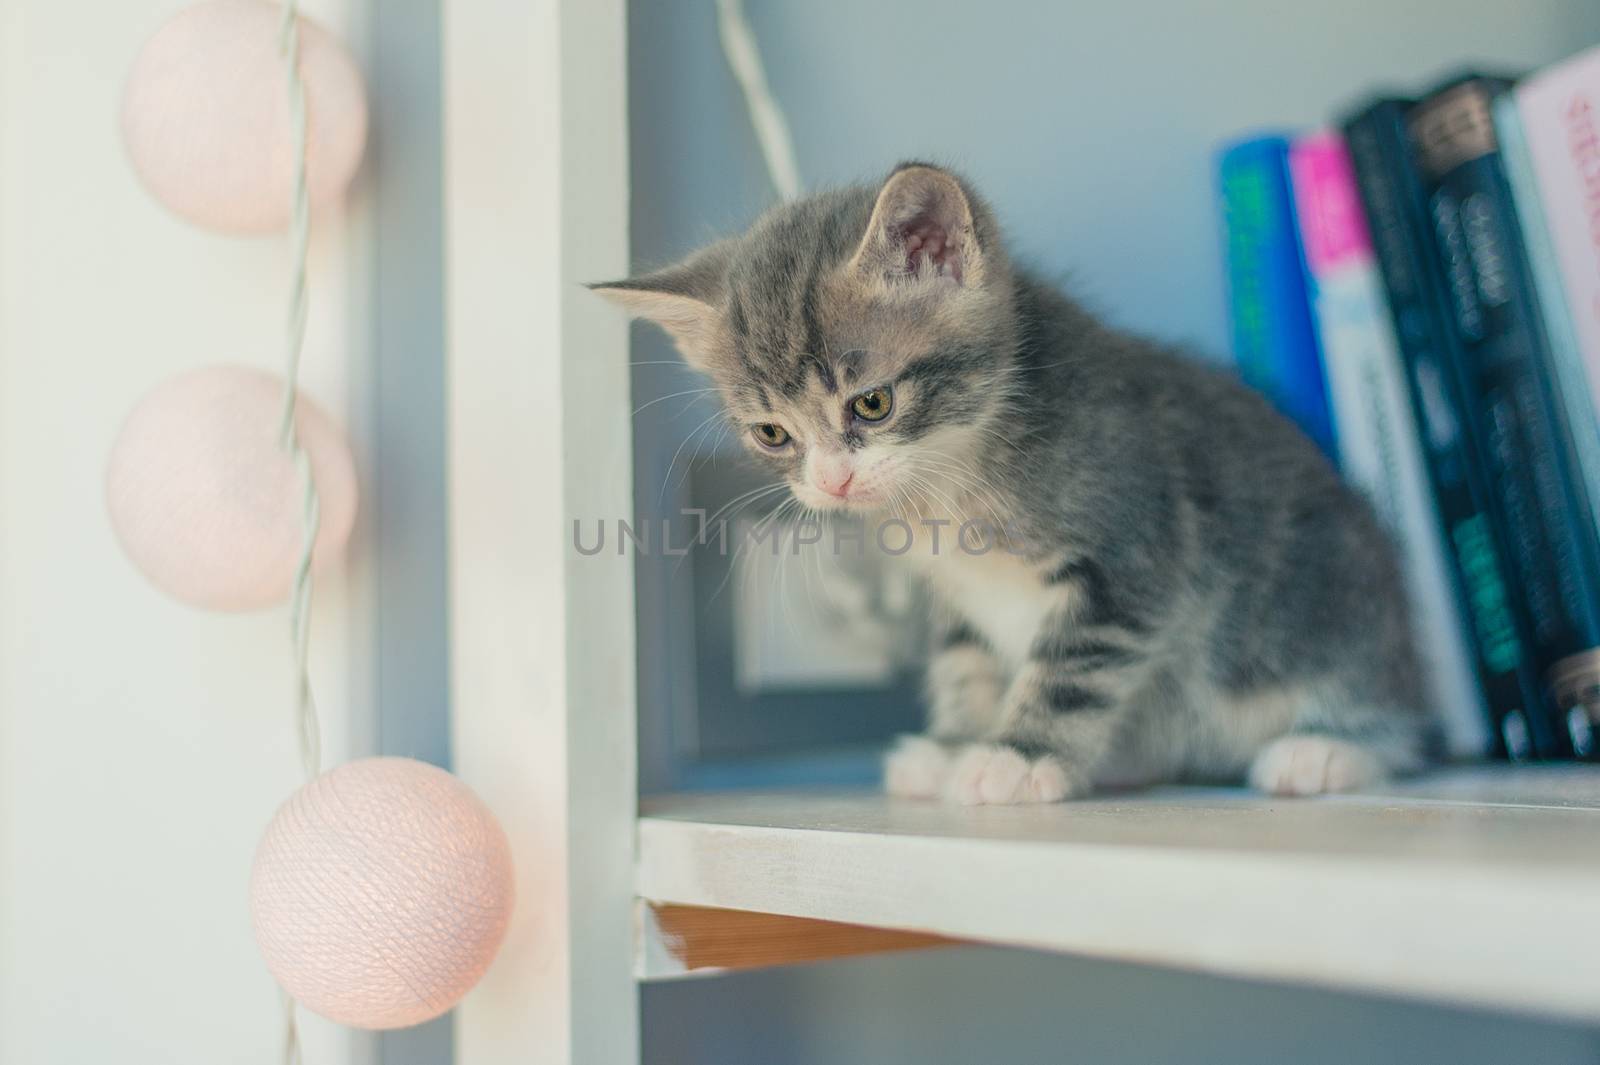 gray kitten sits on a bookshelf near the lights